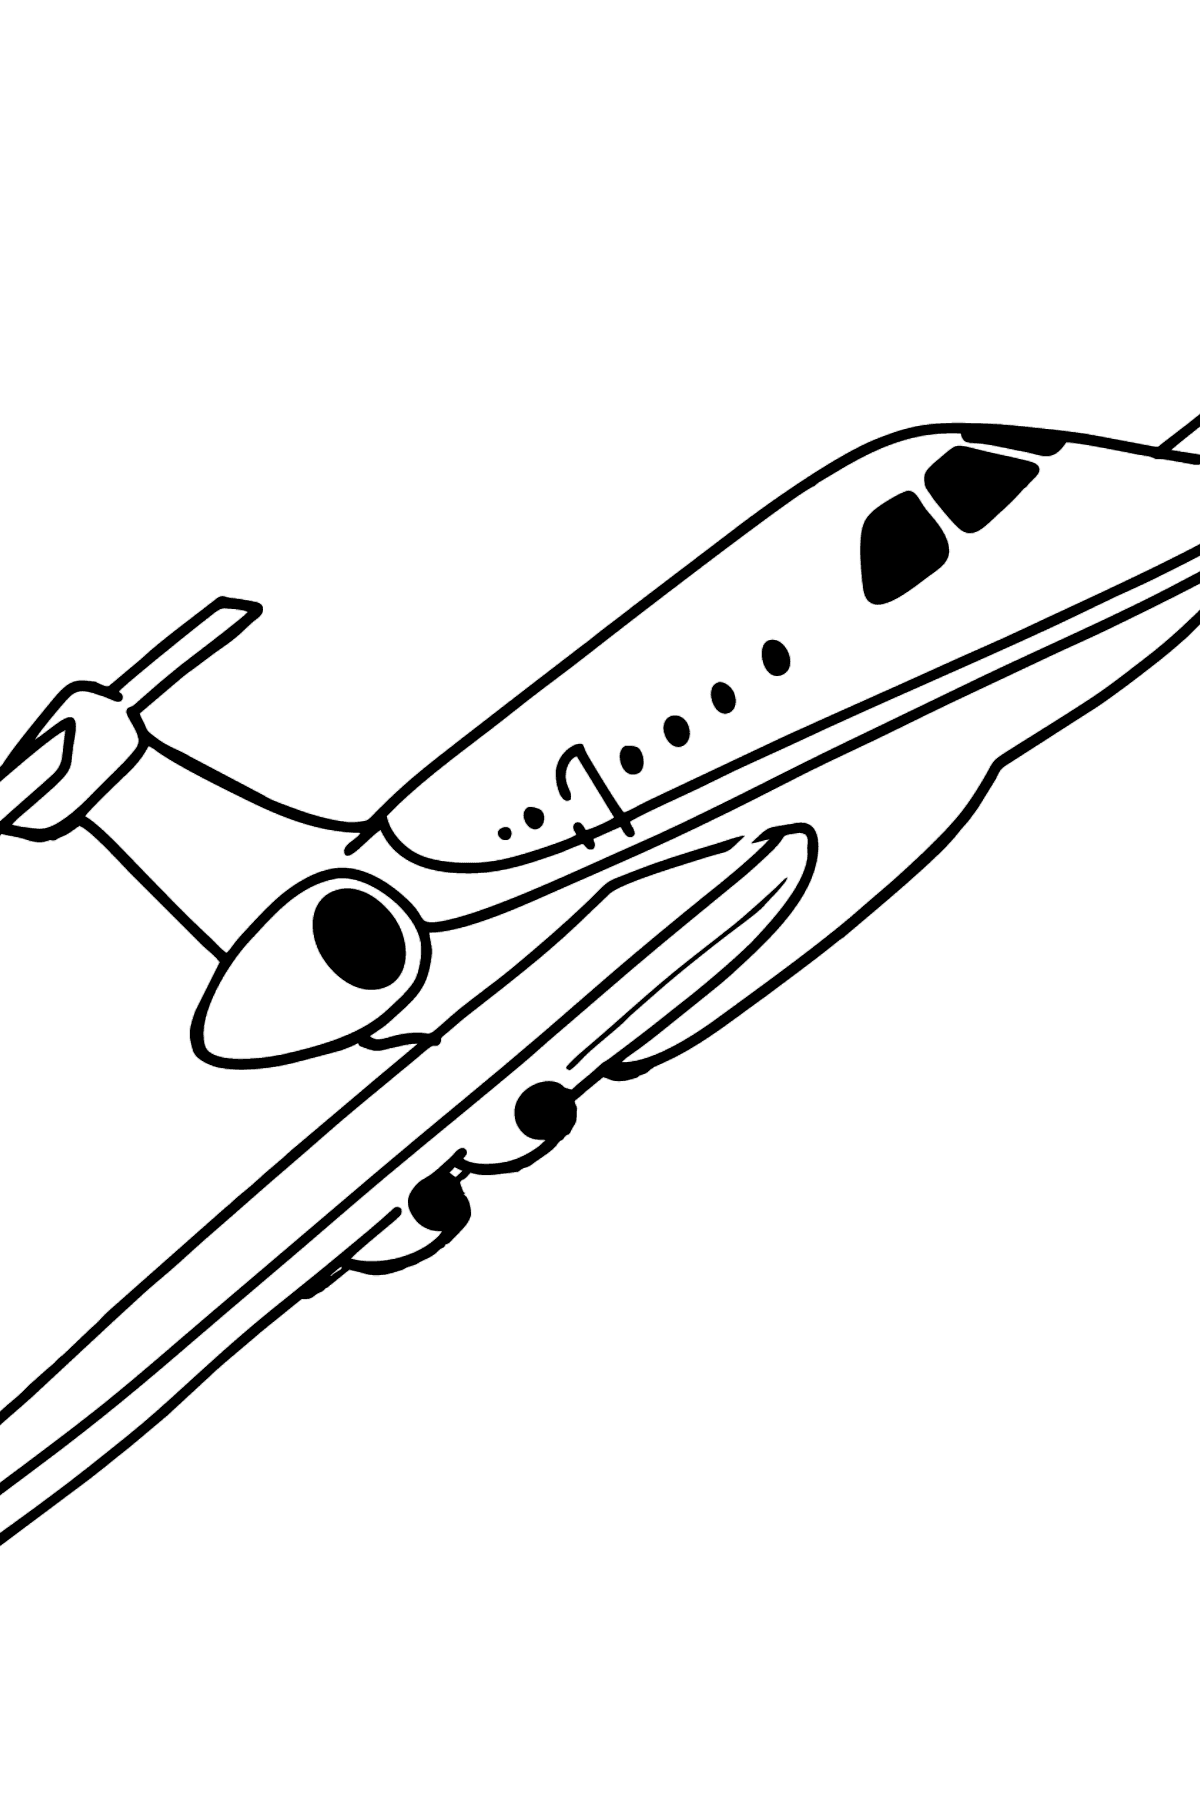 Airbus Flugzeug Ausmalbild - Malvorlagen für Kinder